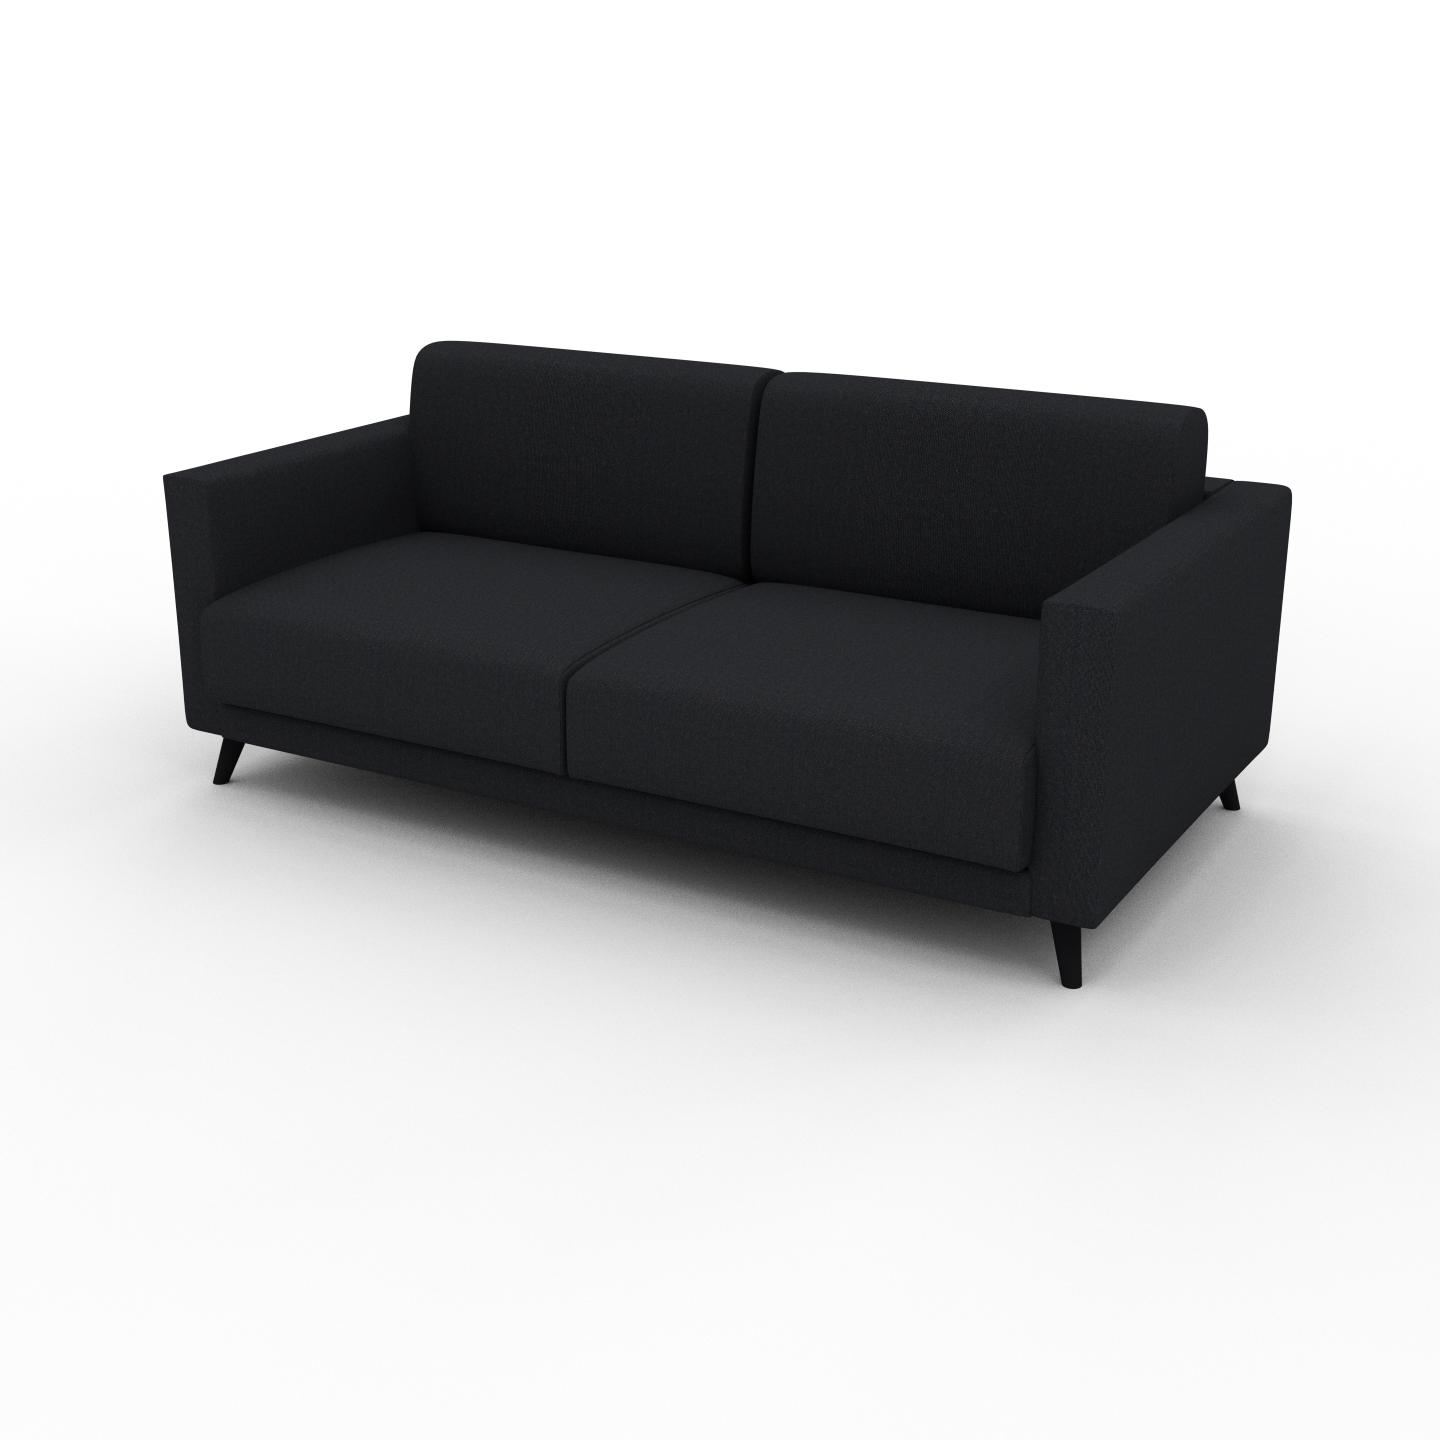 MYCS Sofa 2-Sitzer Schwarz Feingewebe - Elegantes, gemütliches 2-Sitzer Sofa: Hochwertige Qualität, einzigartiges Design - 185 x 75 x 98 cm, konfigurierbar